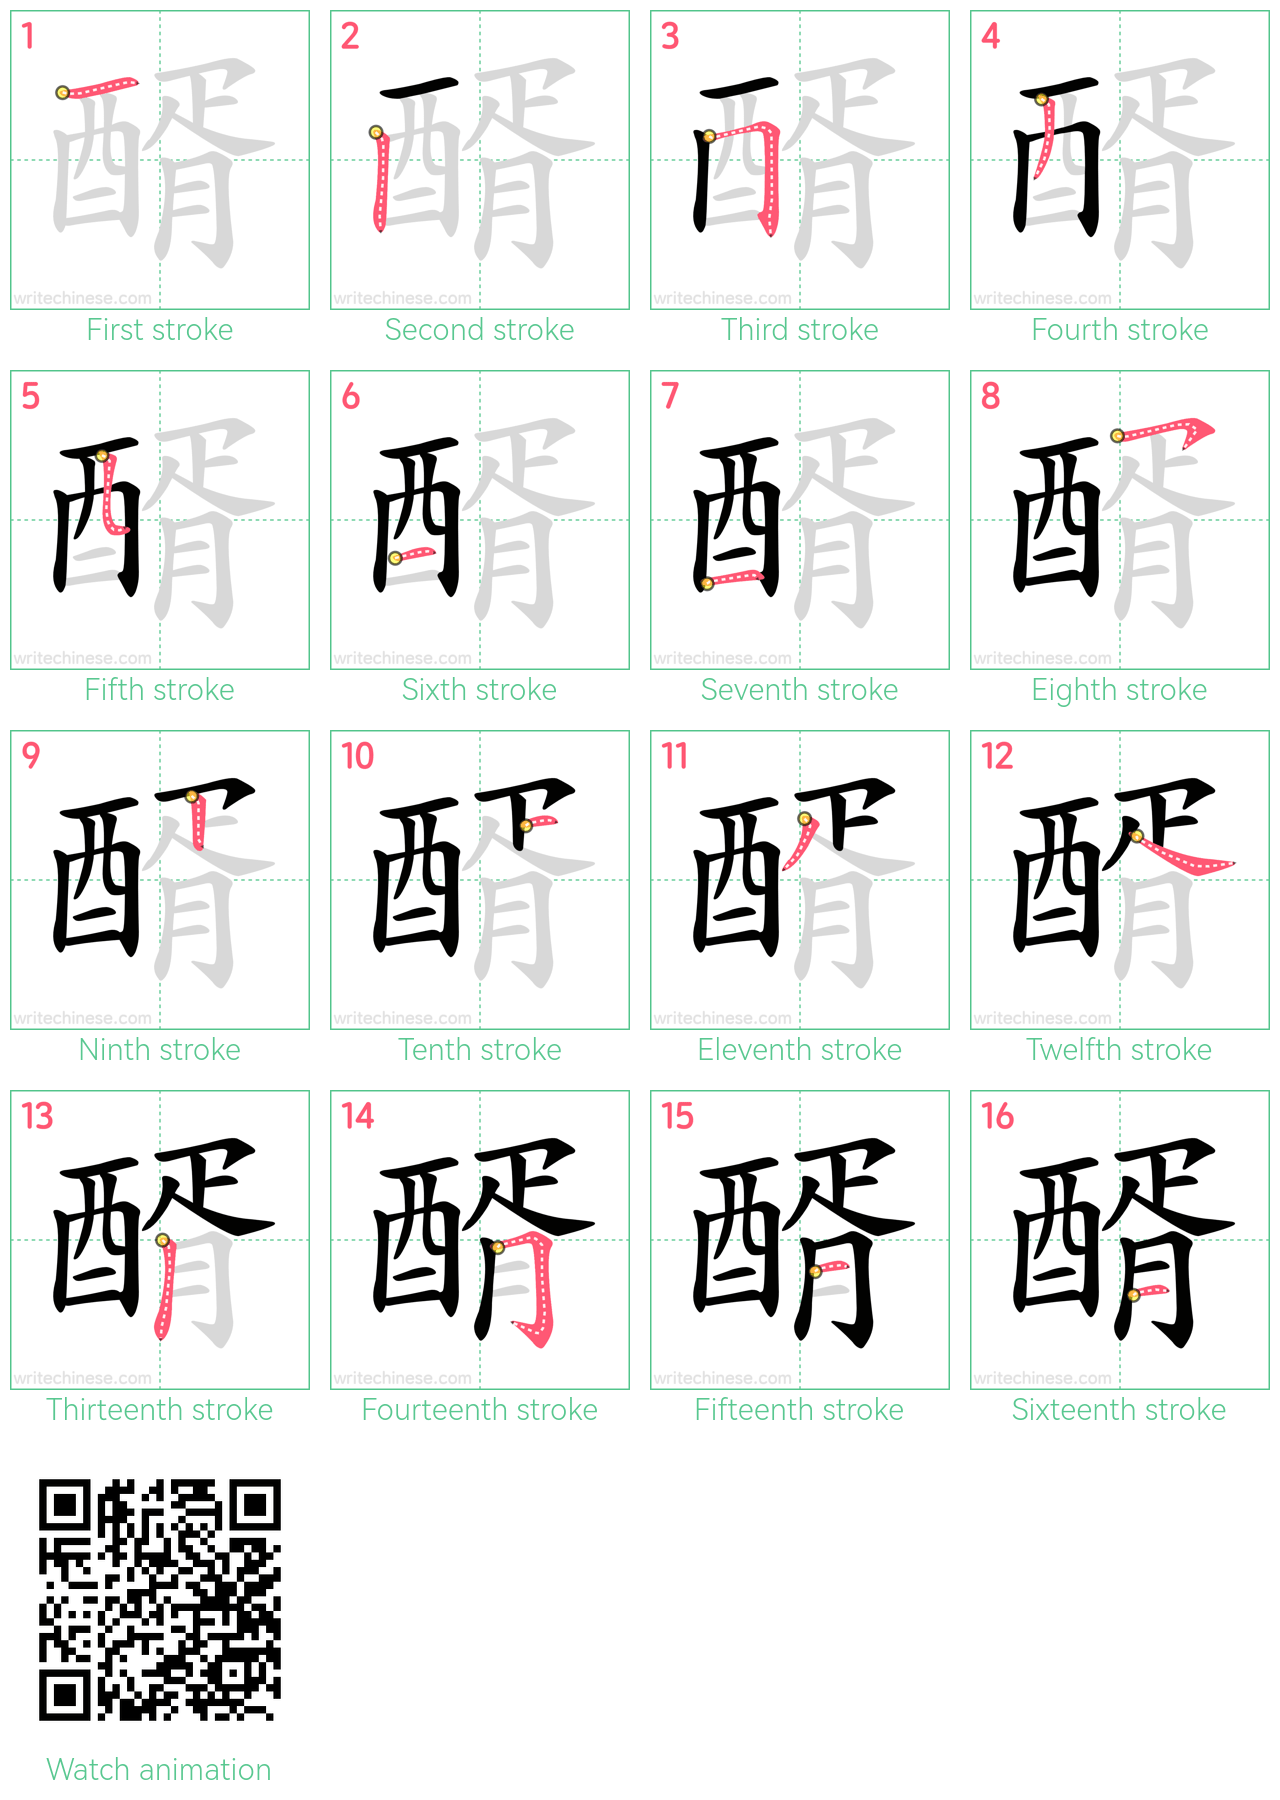 醑 step-by-step stroke order diagrams